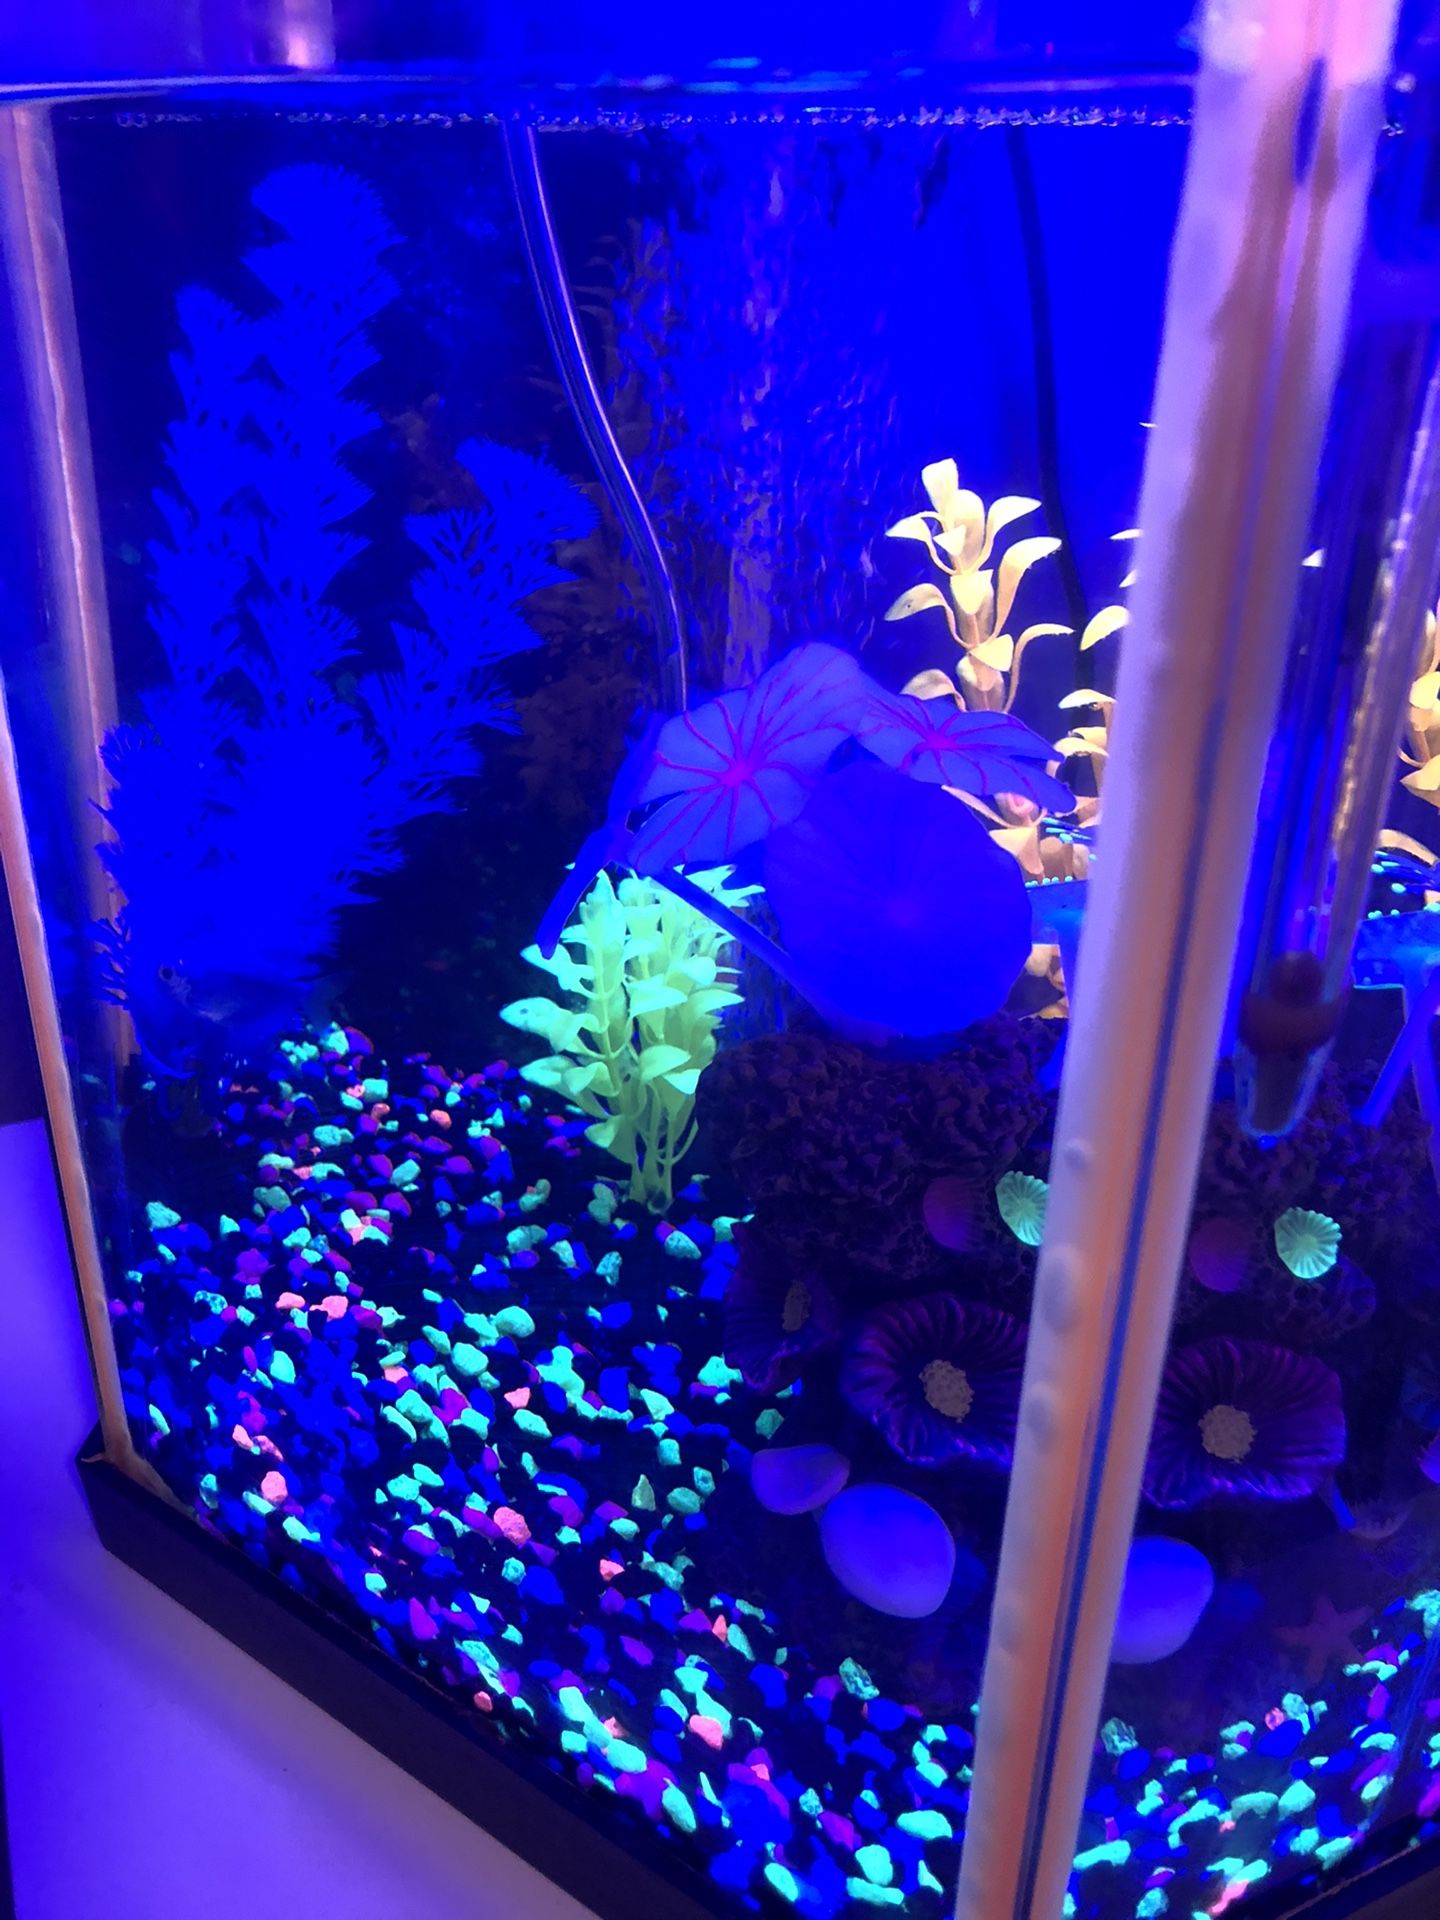 Glow in the dark fish tank